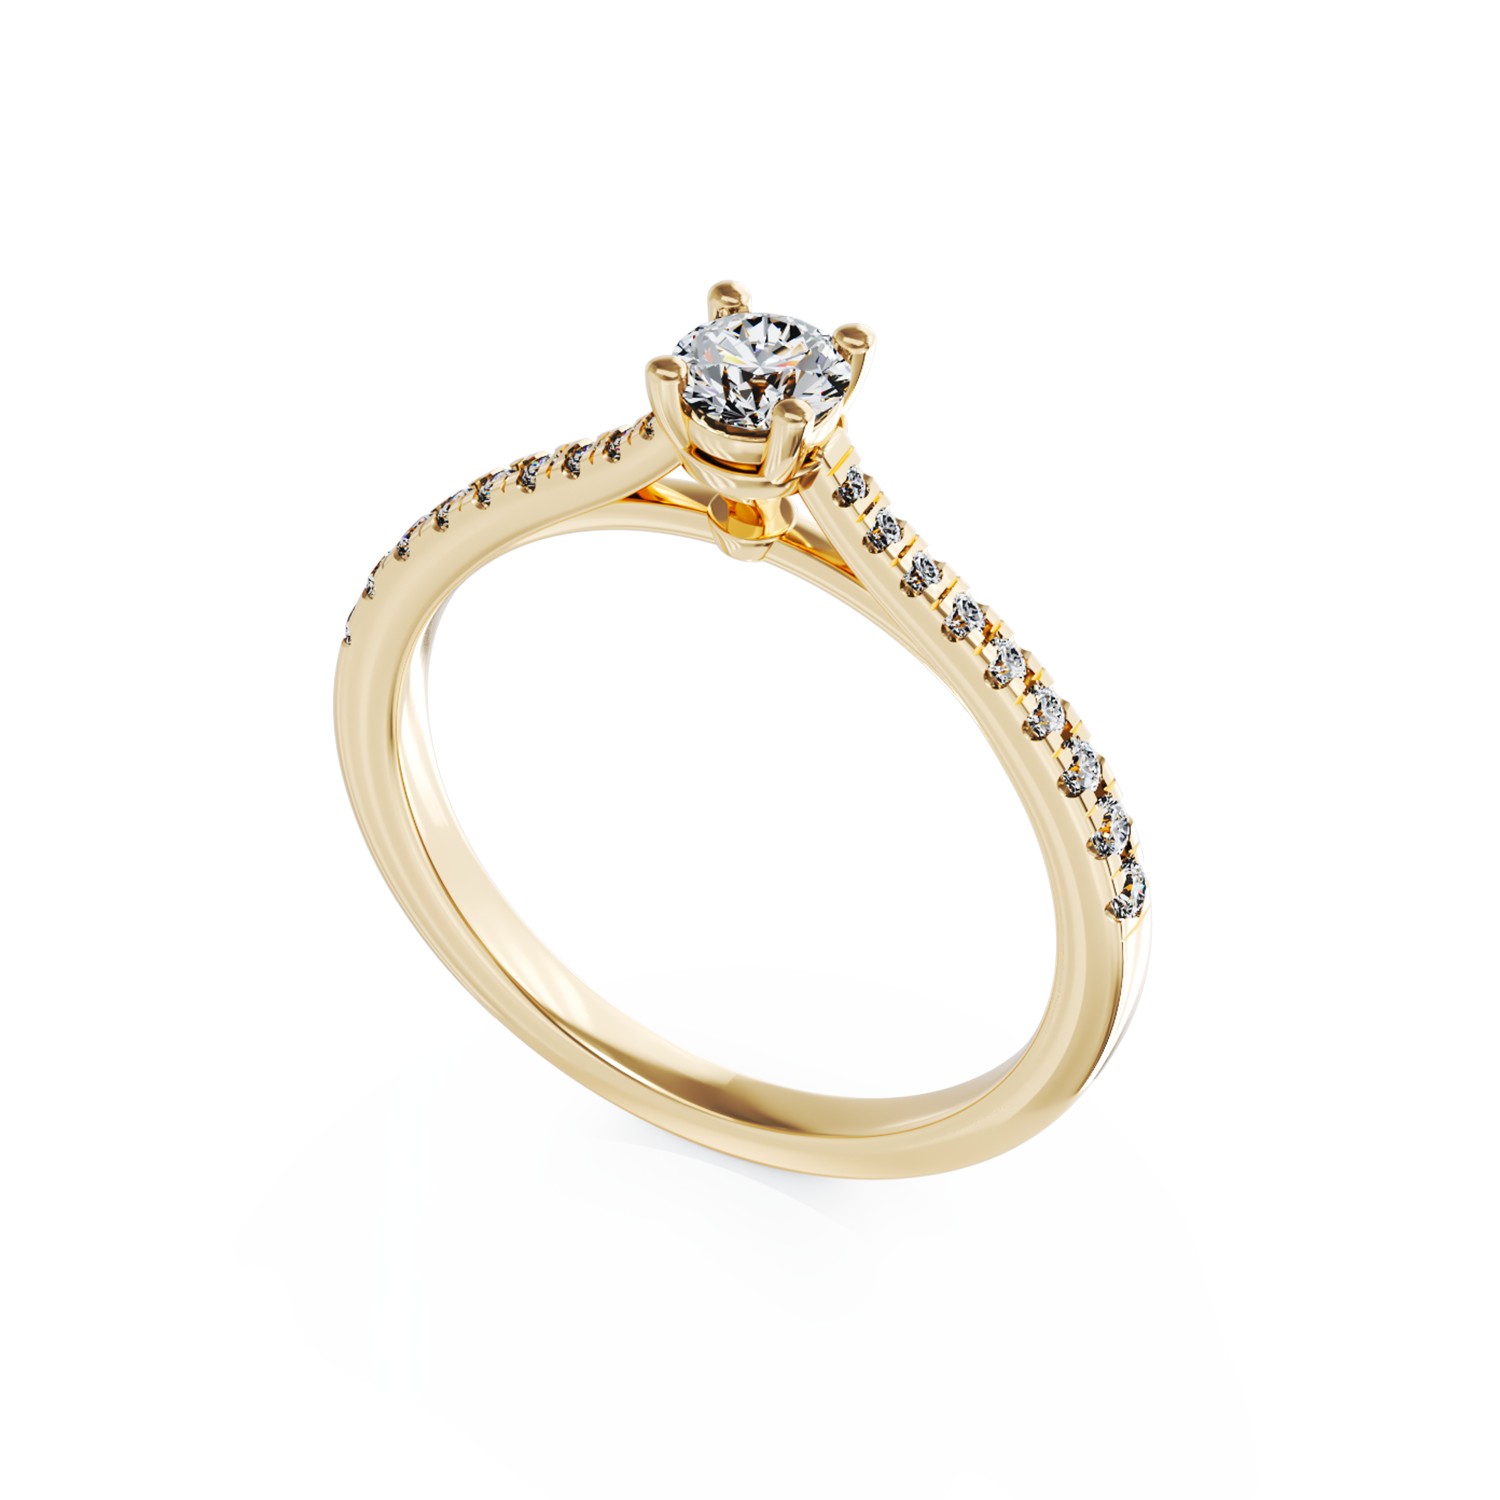 Eljegyzési gyűrű 18K-os sárga aranyból 0,24ct gyémánttal és 0,18ct gyémántokkal. Gramm: 2,44